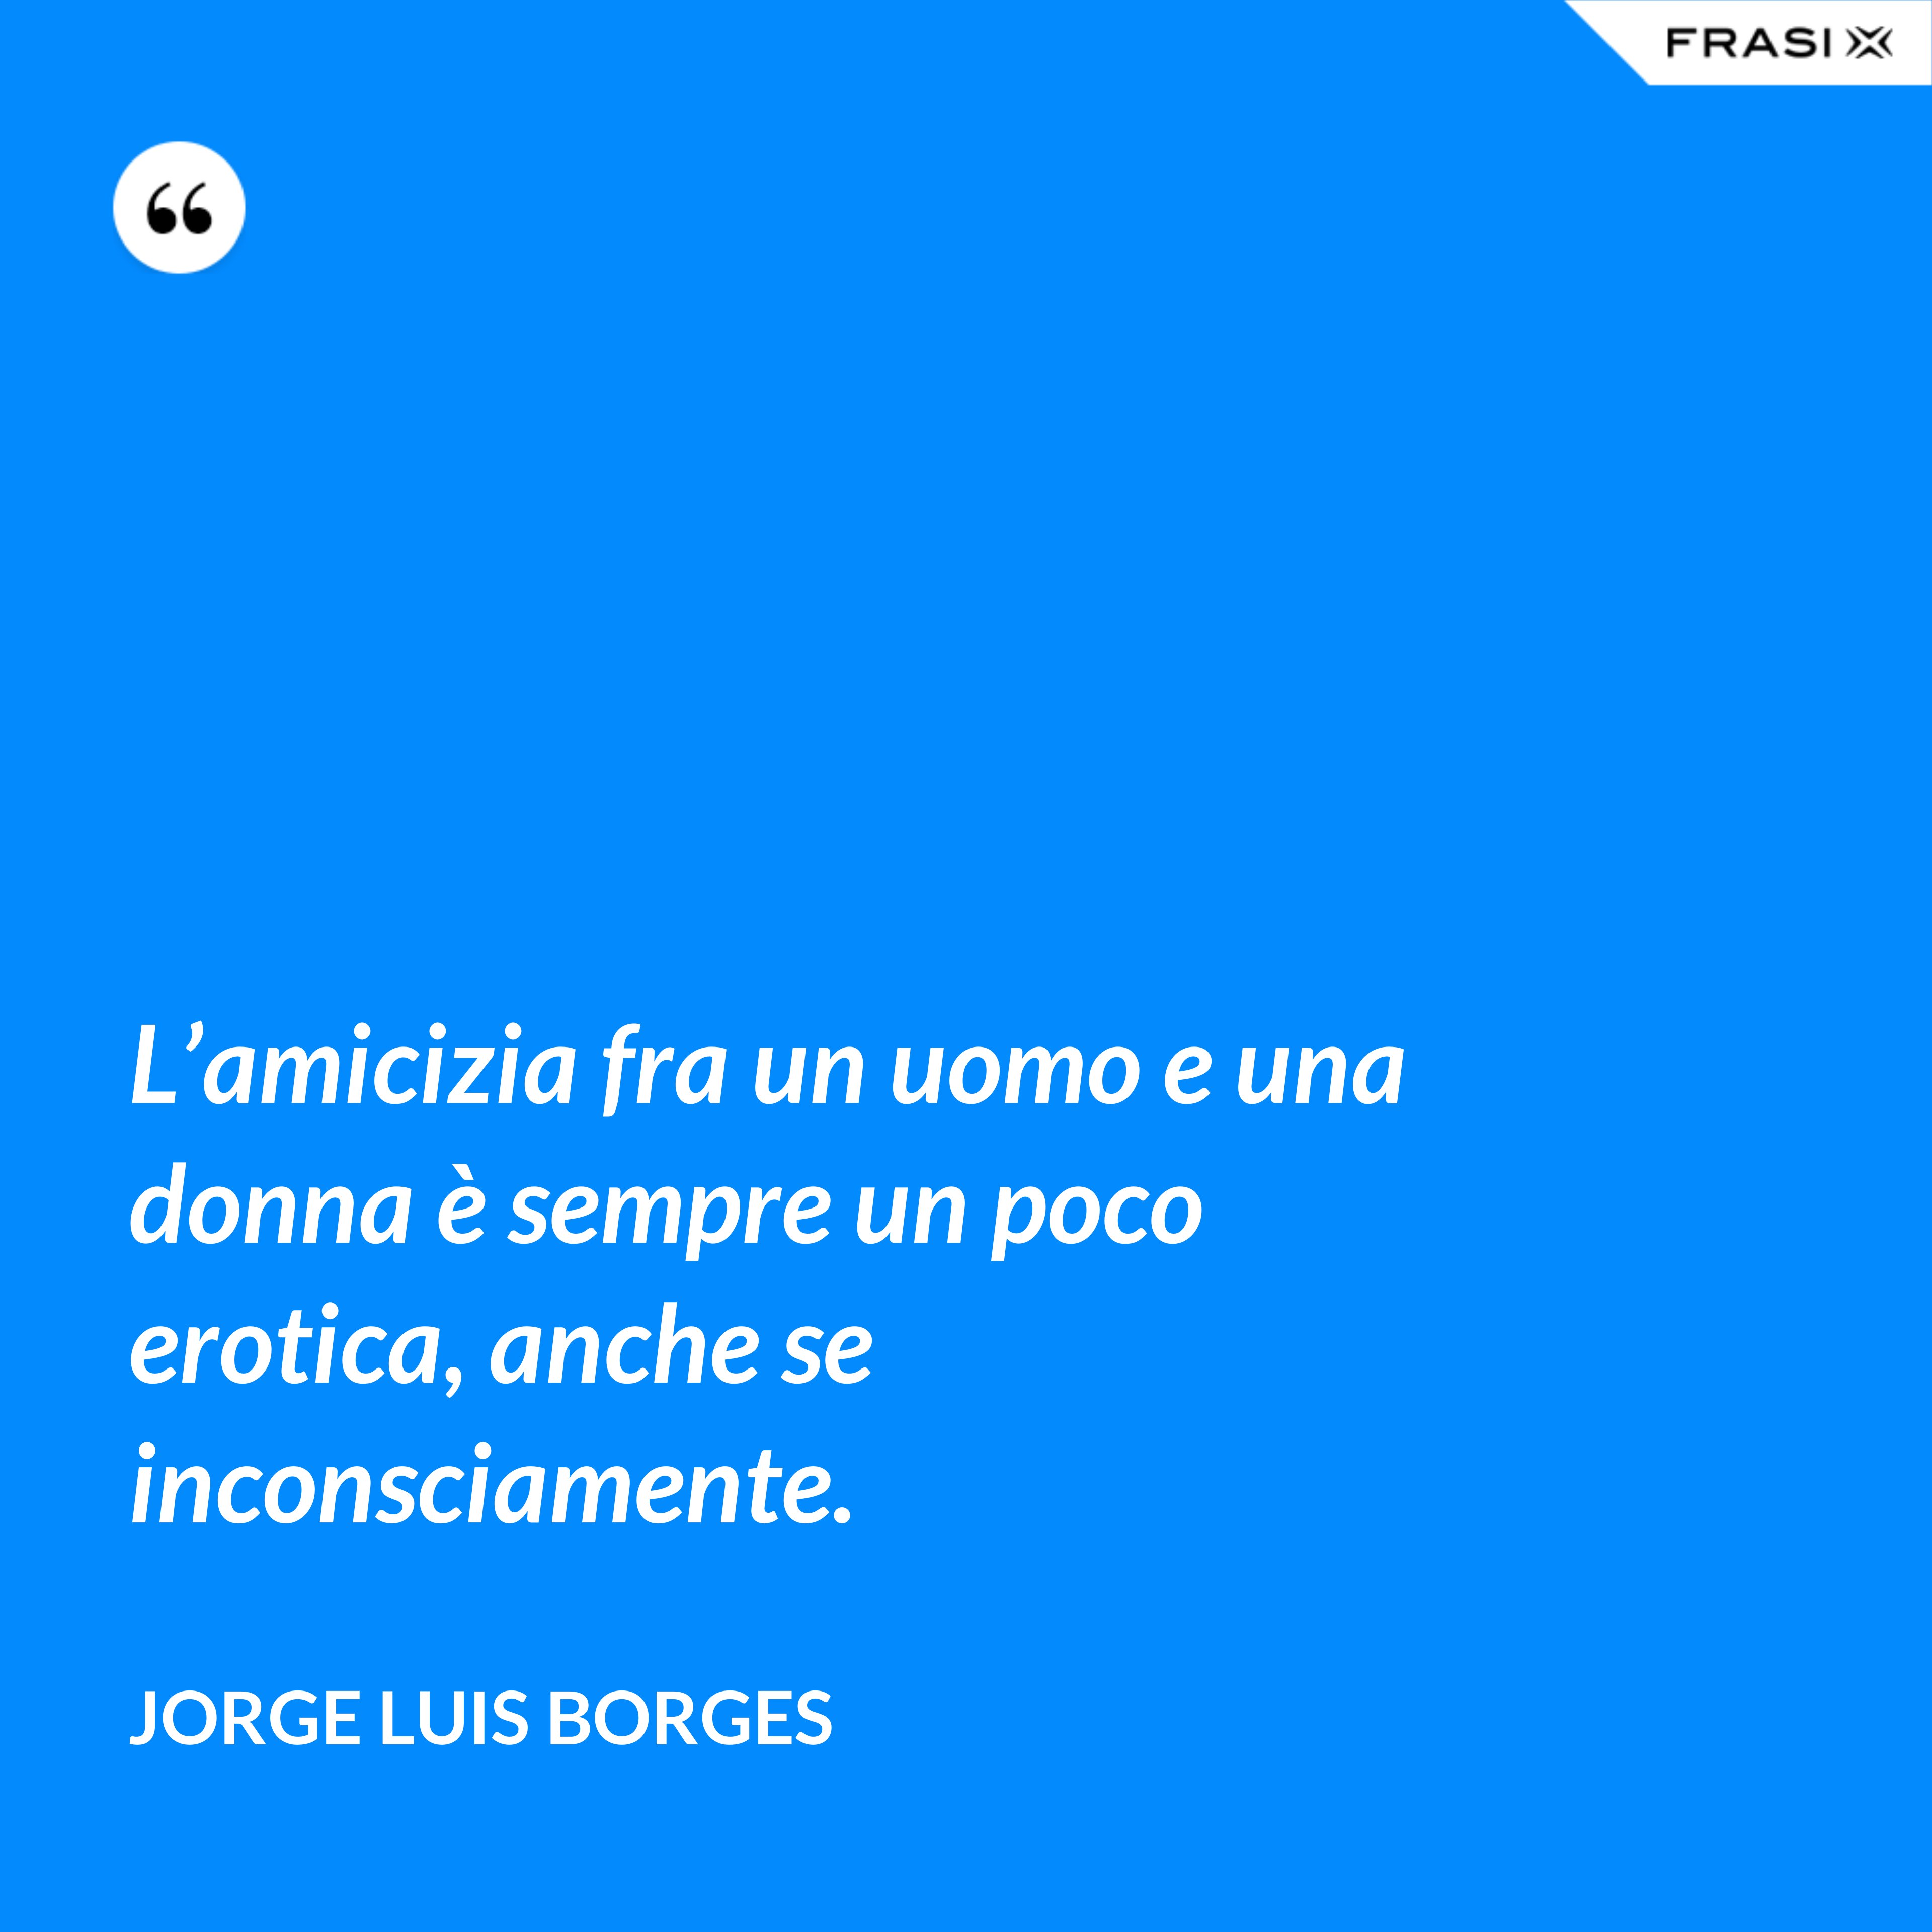 L’amicizia fra un uomo e una donna è sempre un poco erotica, anche se inconsciamente. - Jorge Luis Borges